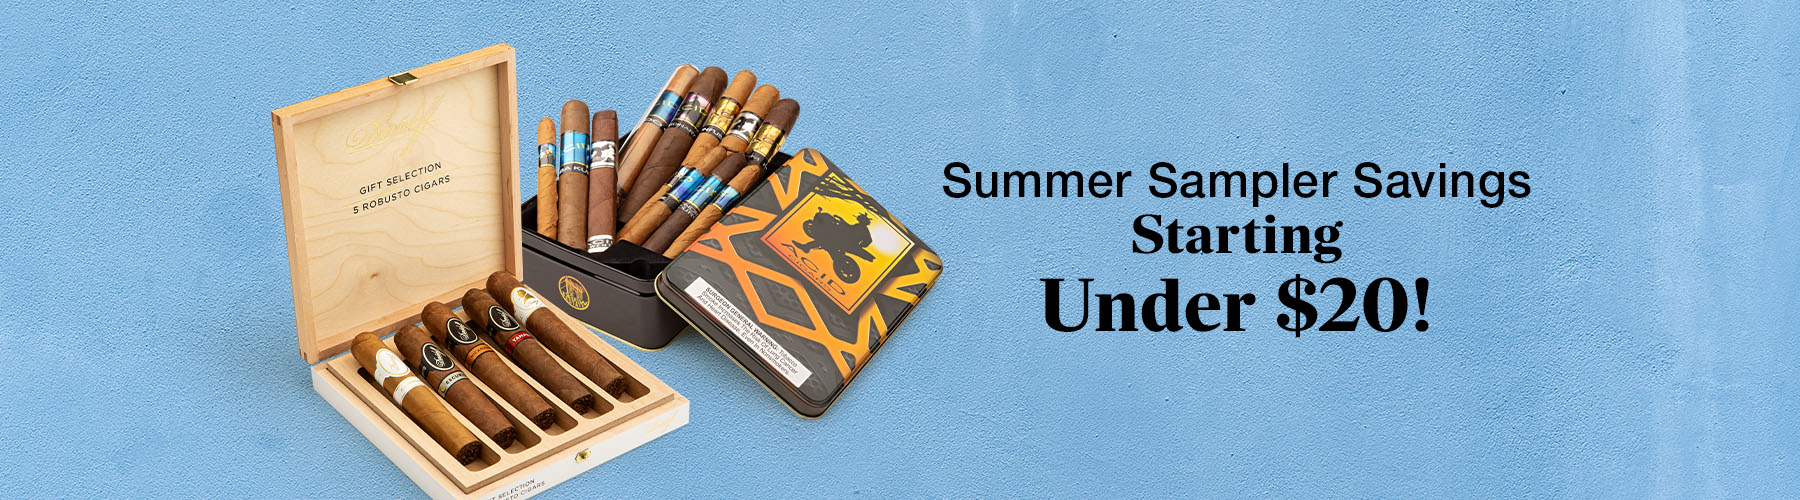 Summer Sampler Savings! 
Starting under $20